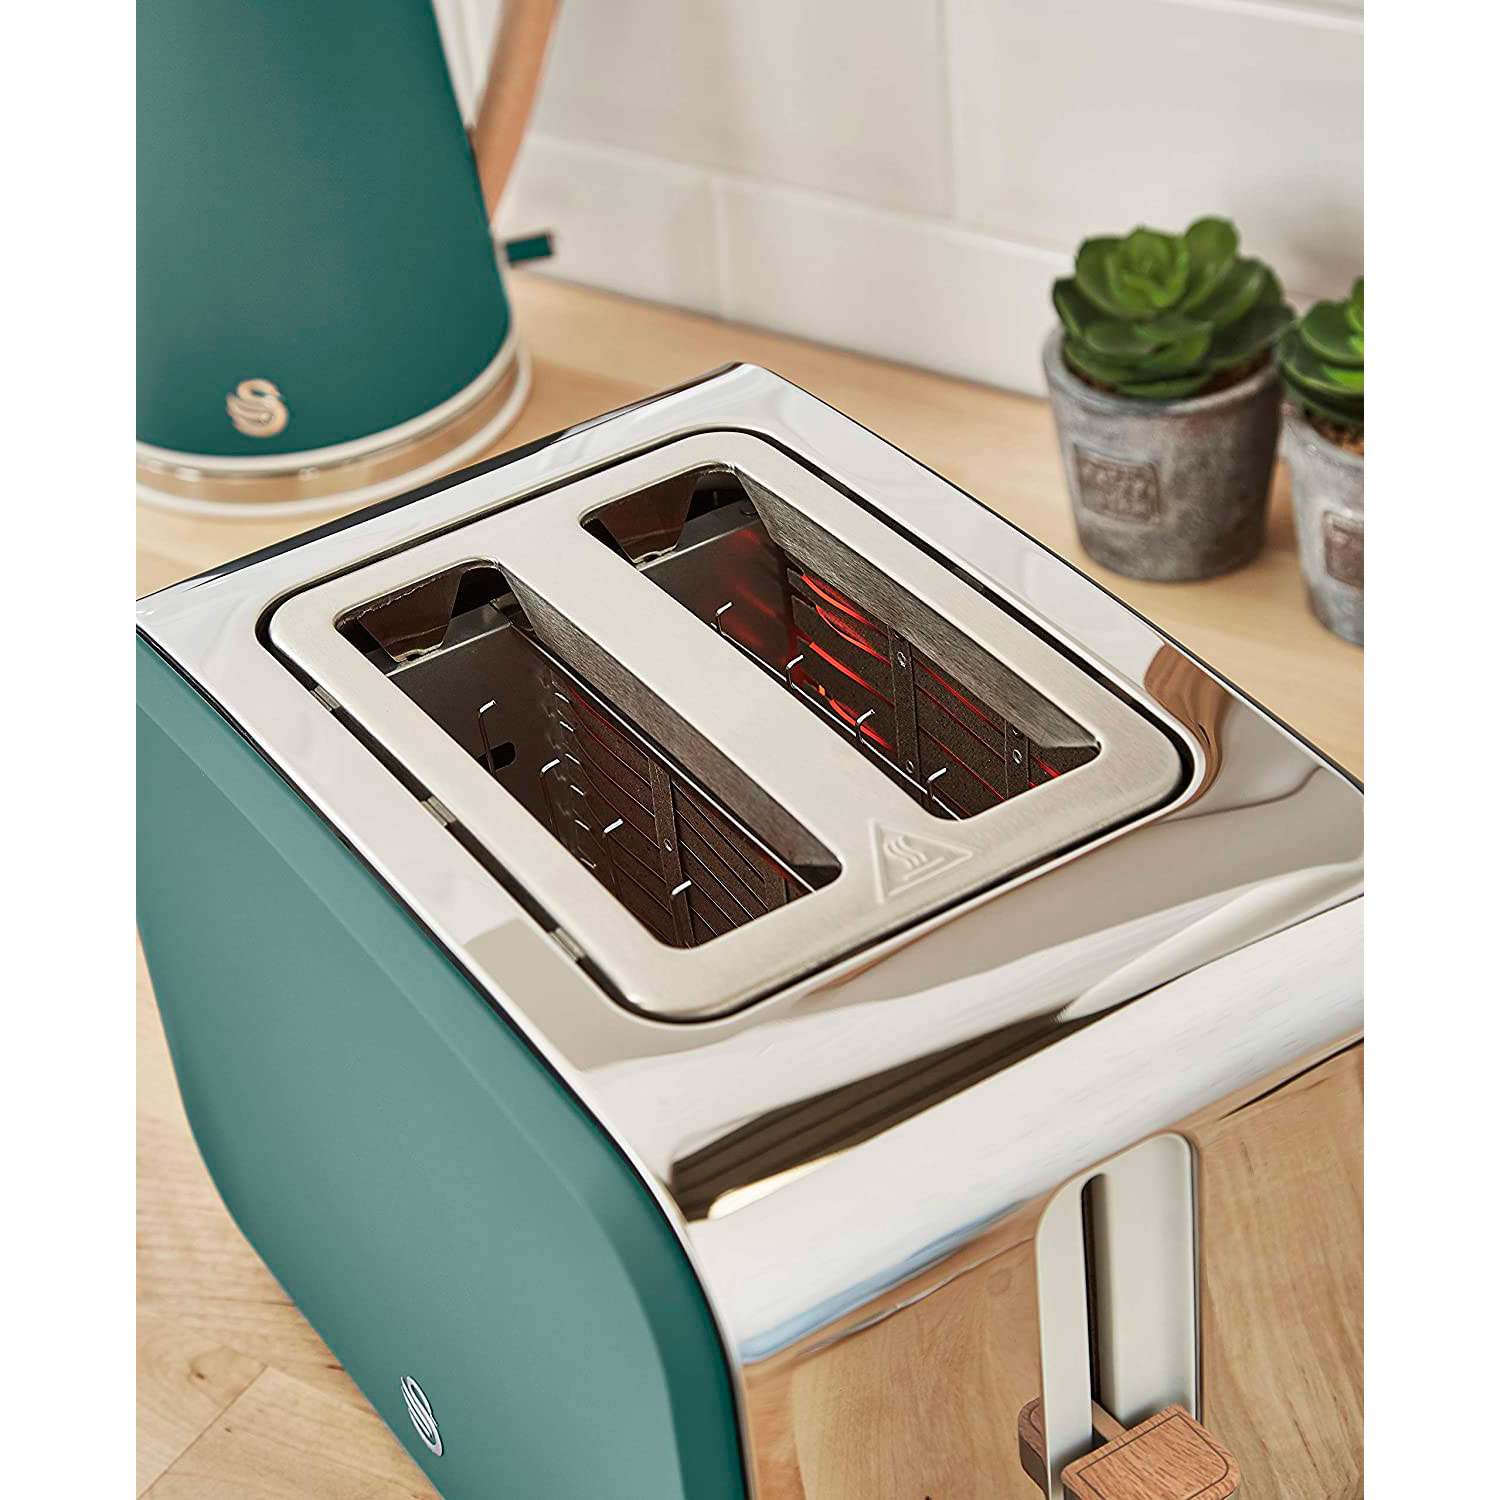 Watt, Grün STRP1060GRENEU Schlitze: Nordic 2) SWAN Toaster (900 und Wasserkocher Set